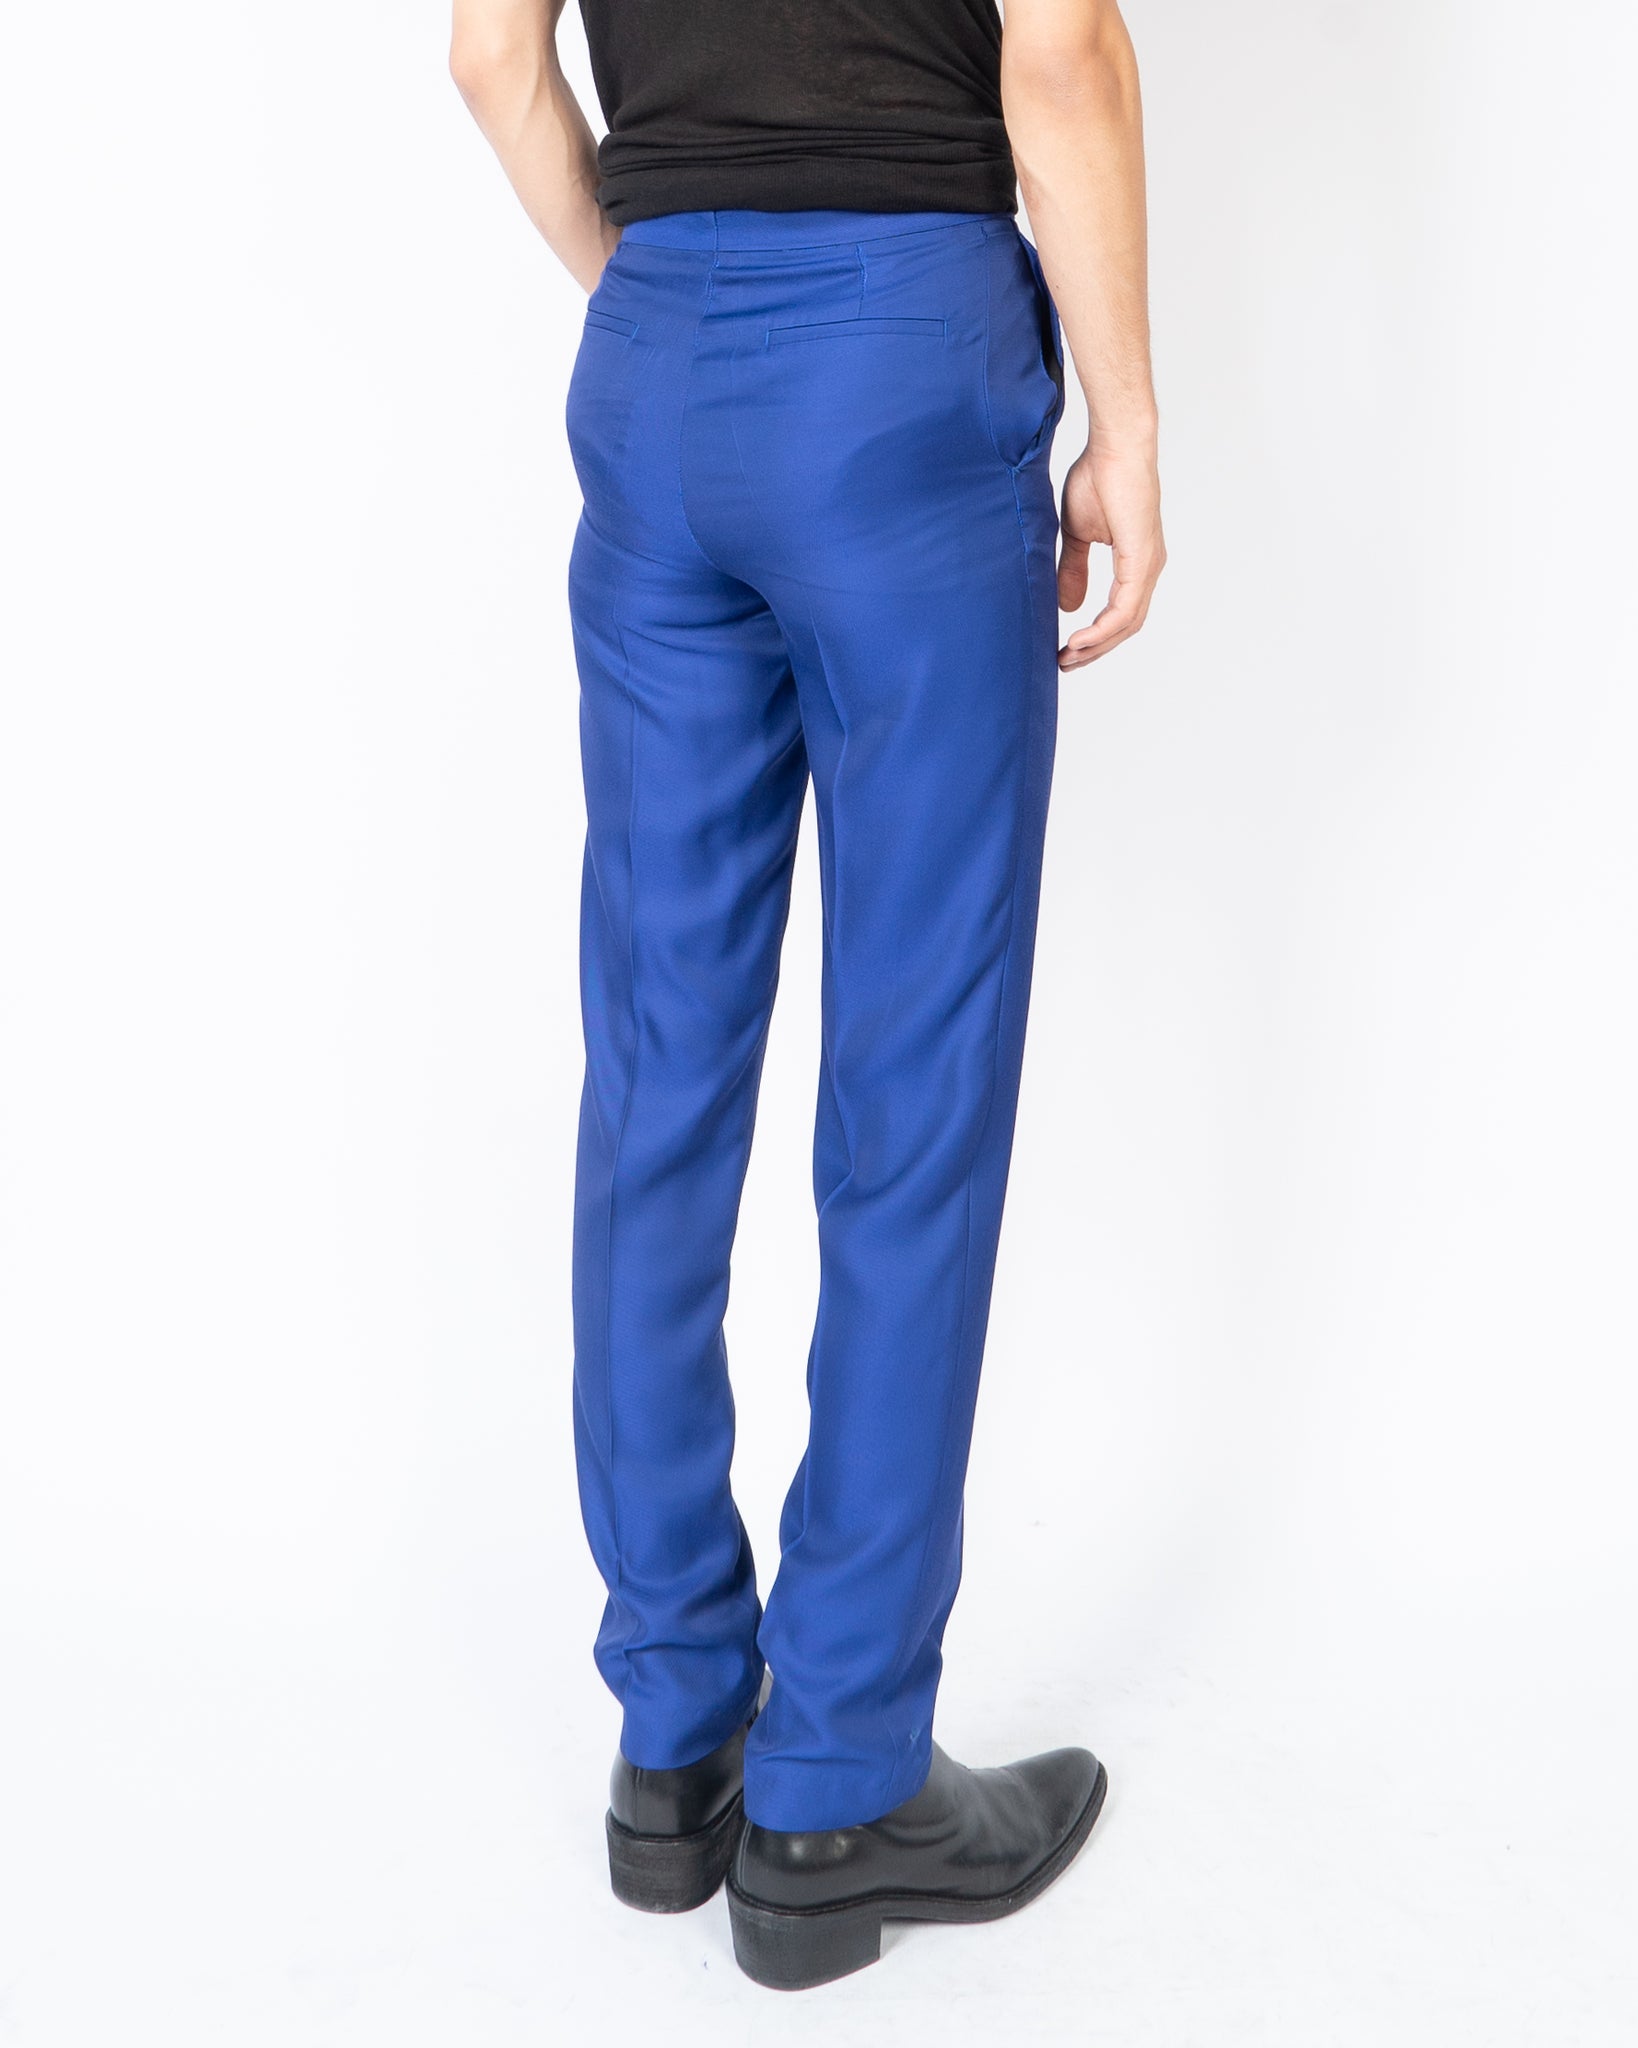 Sartorio Pants Royal Blue 34 Slim Fit - Sartorial SALE - Tie Deals